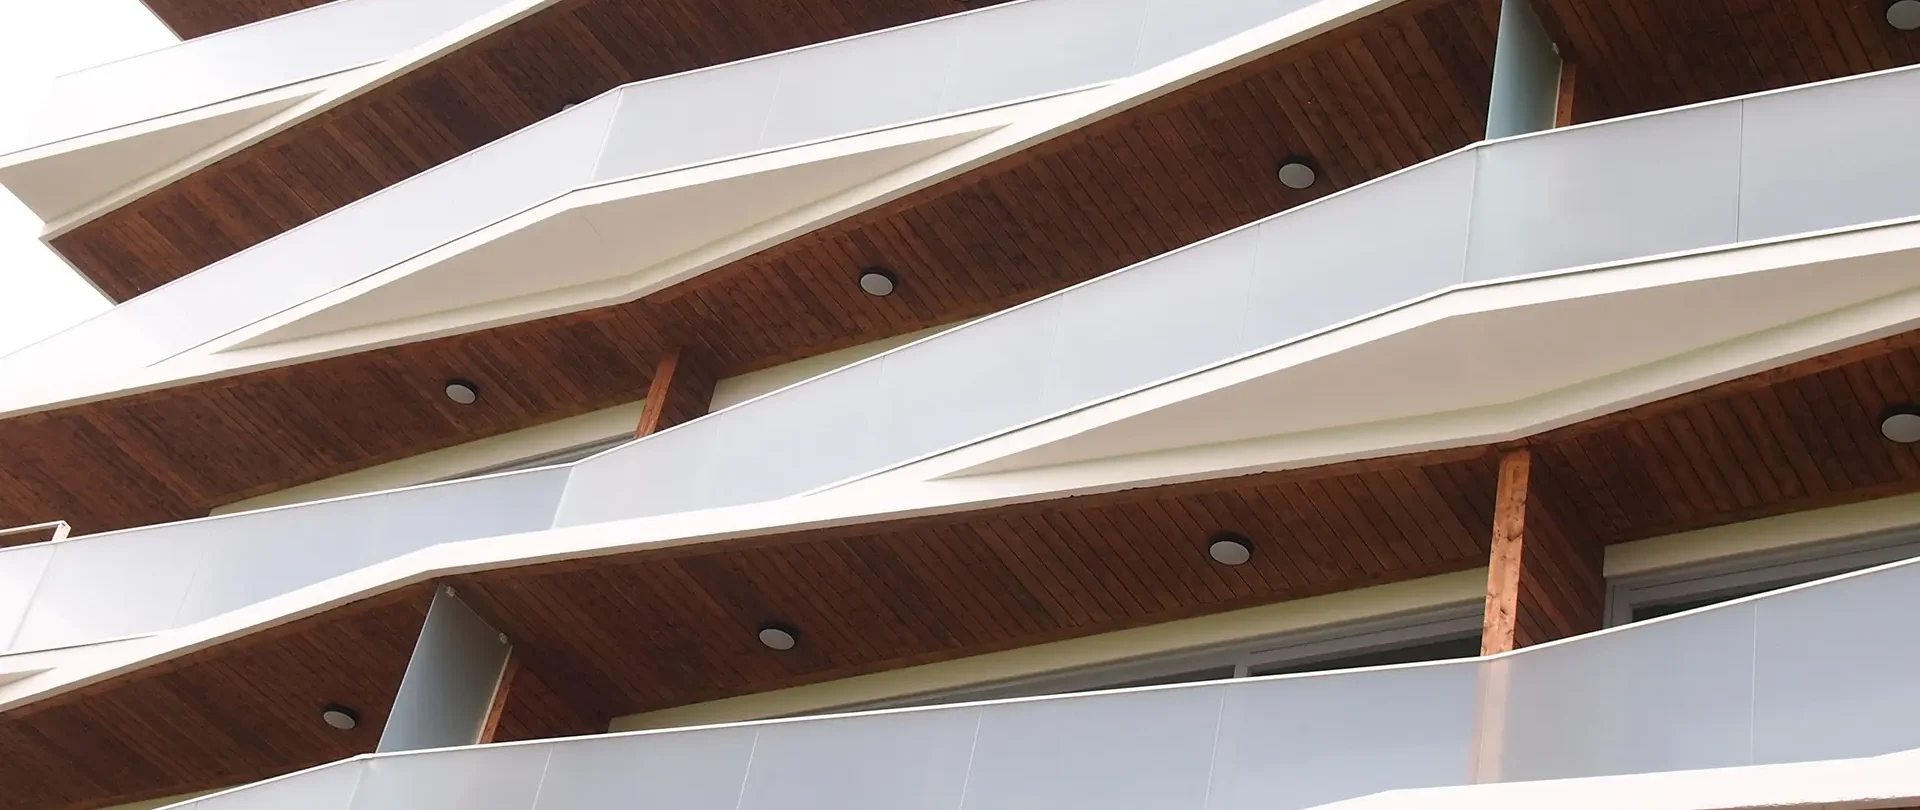 Parmet Tiiru 5 kortermaja fassaad arhitektuurifoto